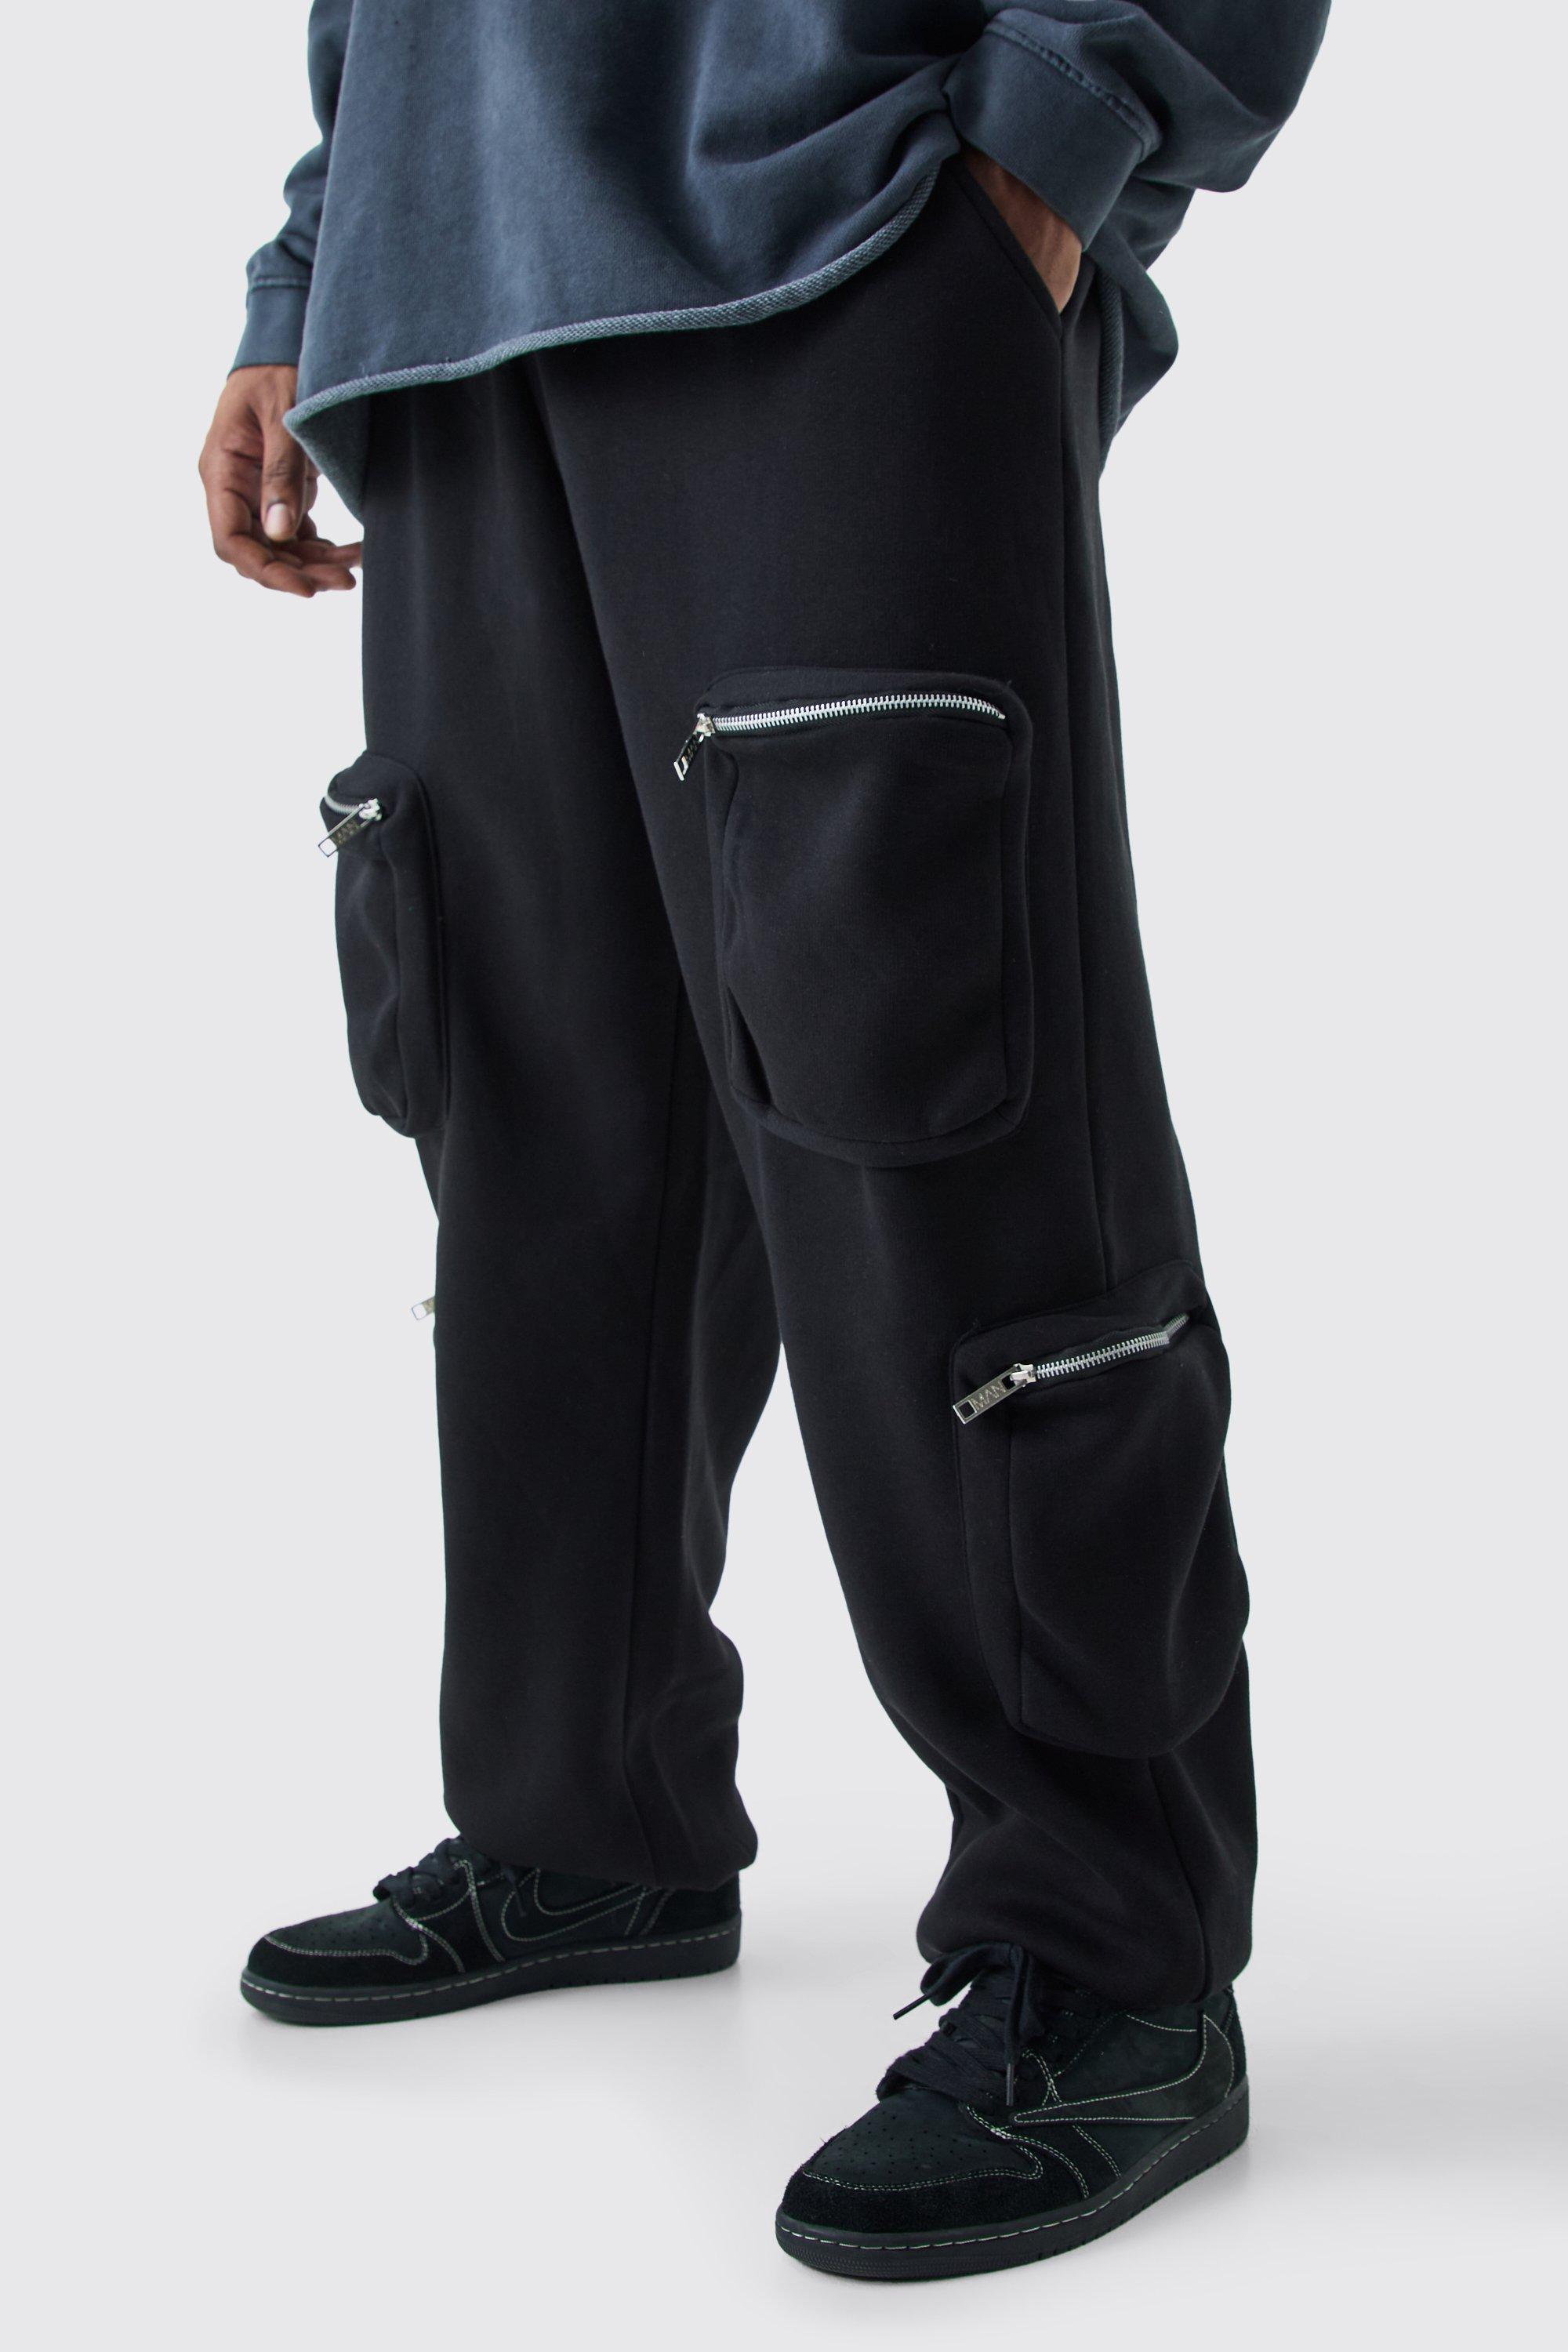 Image of Pantaloni tuta Plus Size stile Utility Cargo, Nero